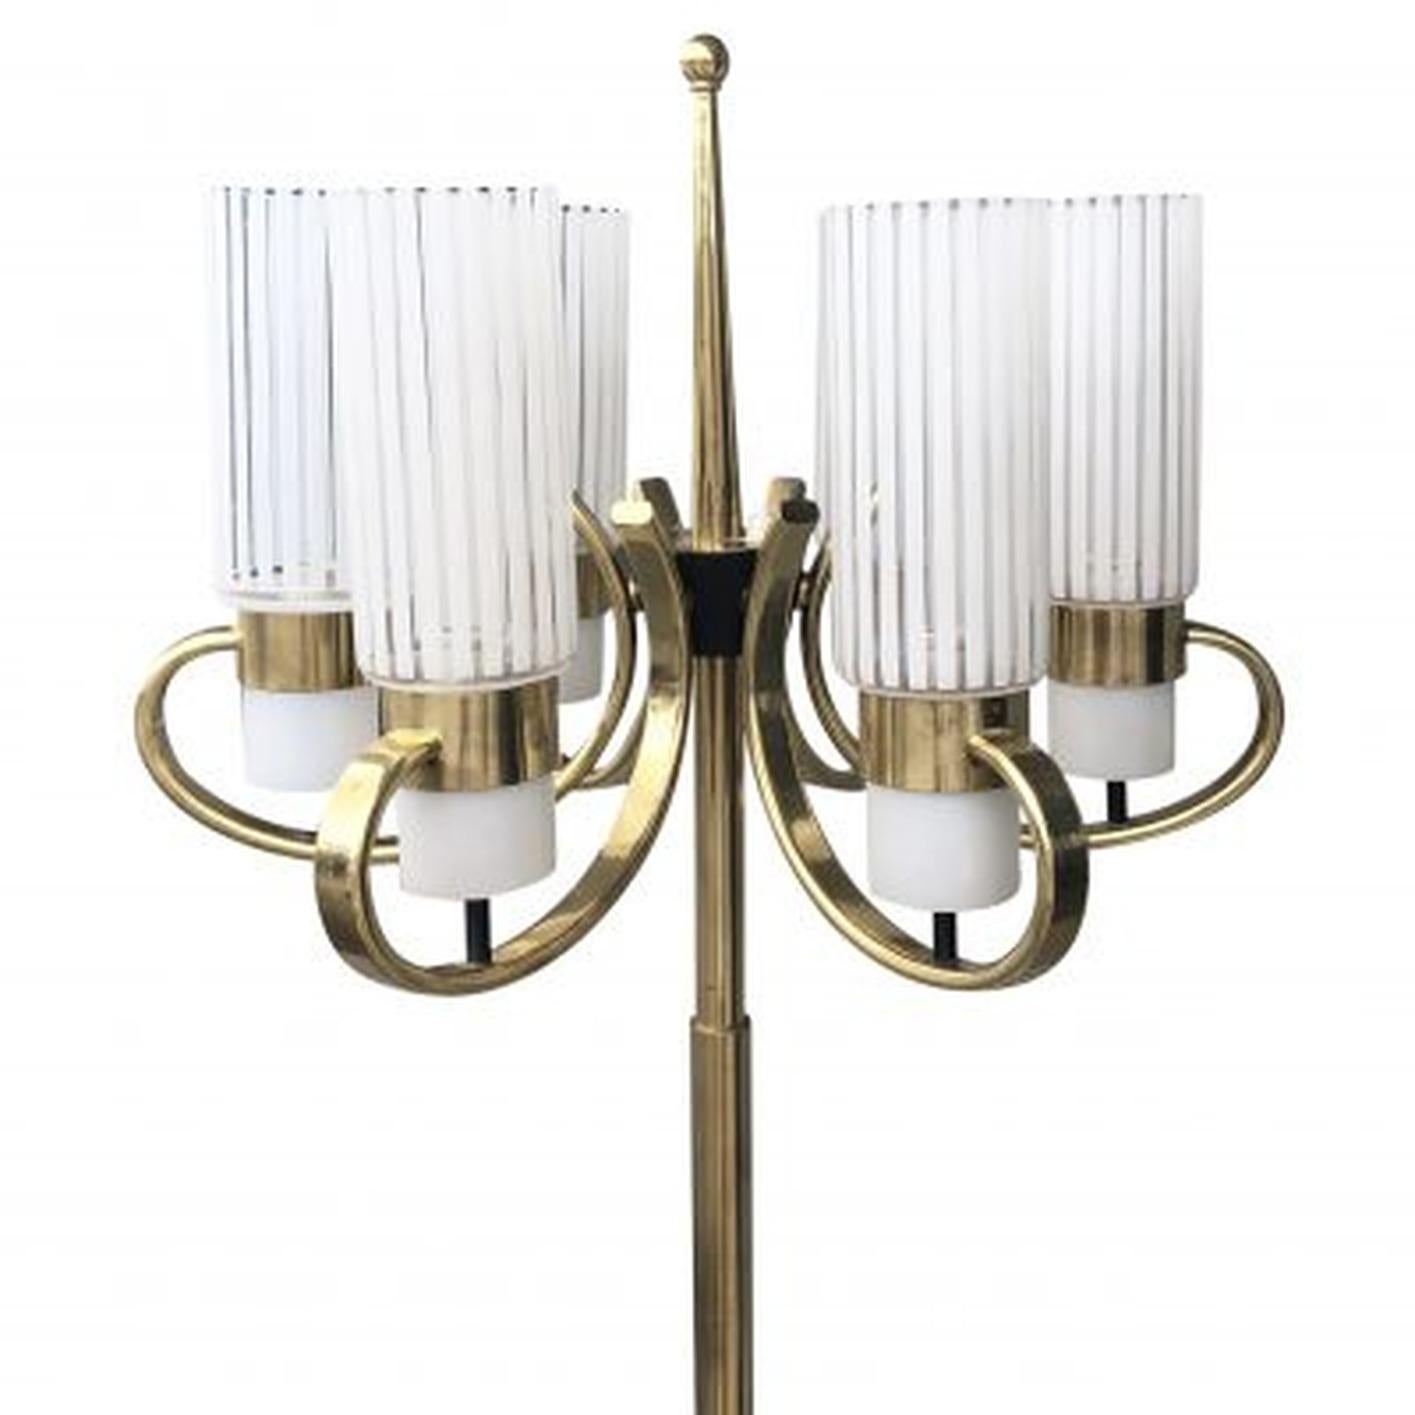 A Vintage Mid-Century Modern Italienische Messing Stehlampe mit sechs Scroll Form Arme mit zylindrischen gestreiften Glasschirme, steht auf einem runden, weißen Marmorsockel. Die Lampenschirme im Stil von Stilnovo sind jeweils mit einer Lichtfassung